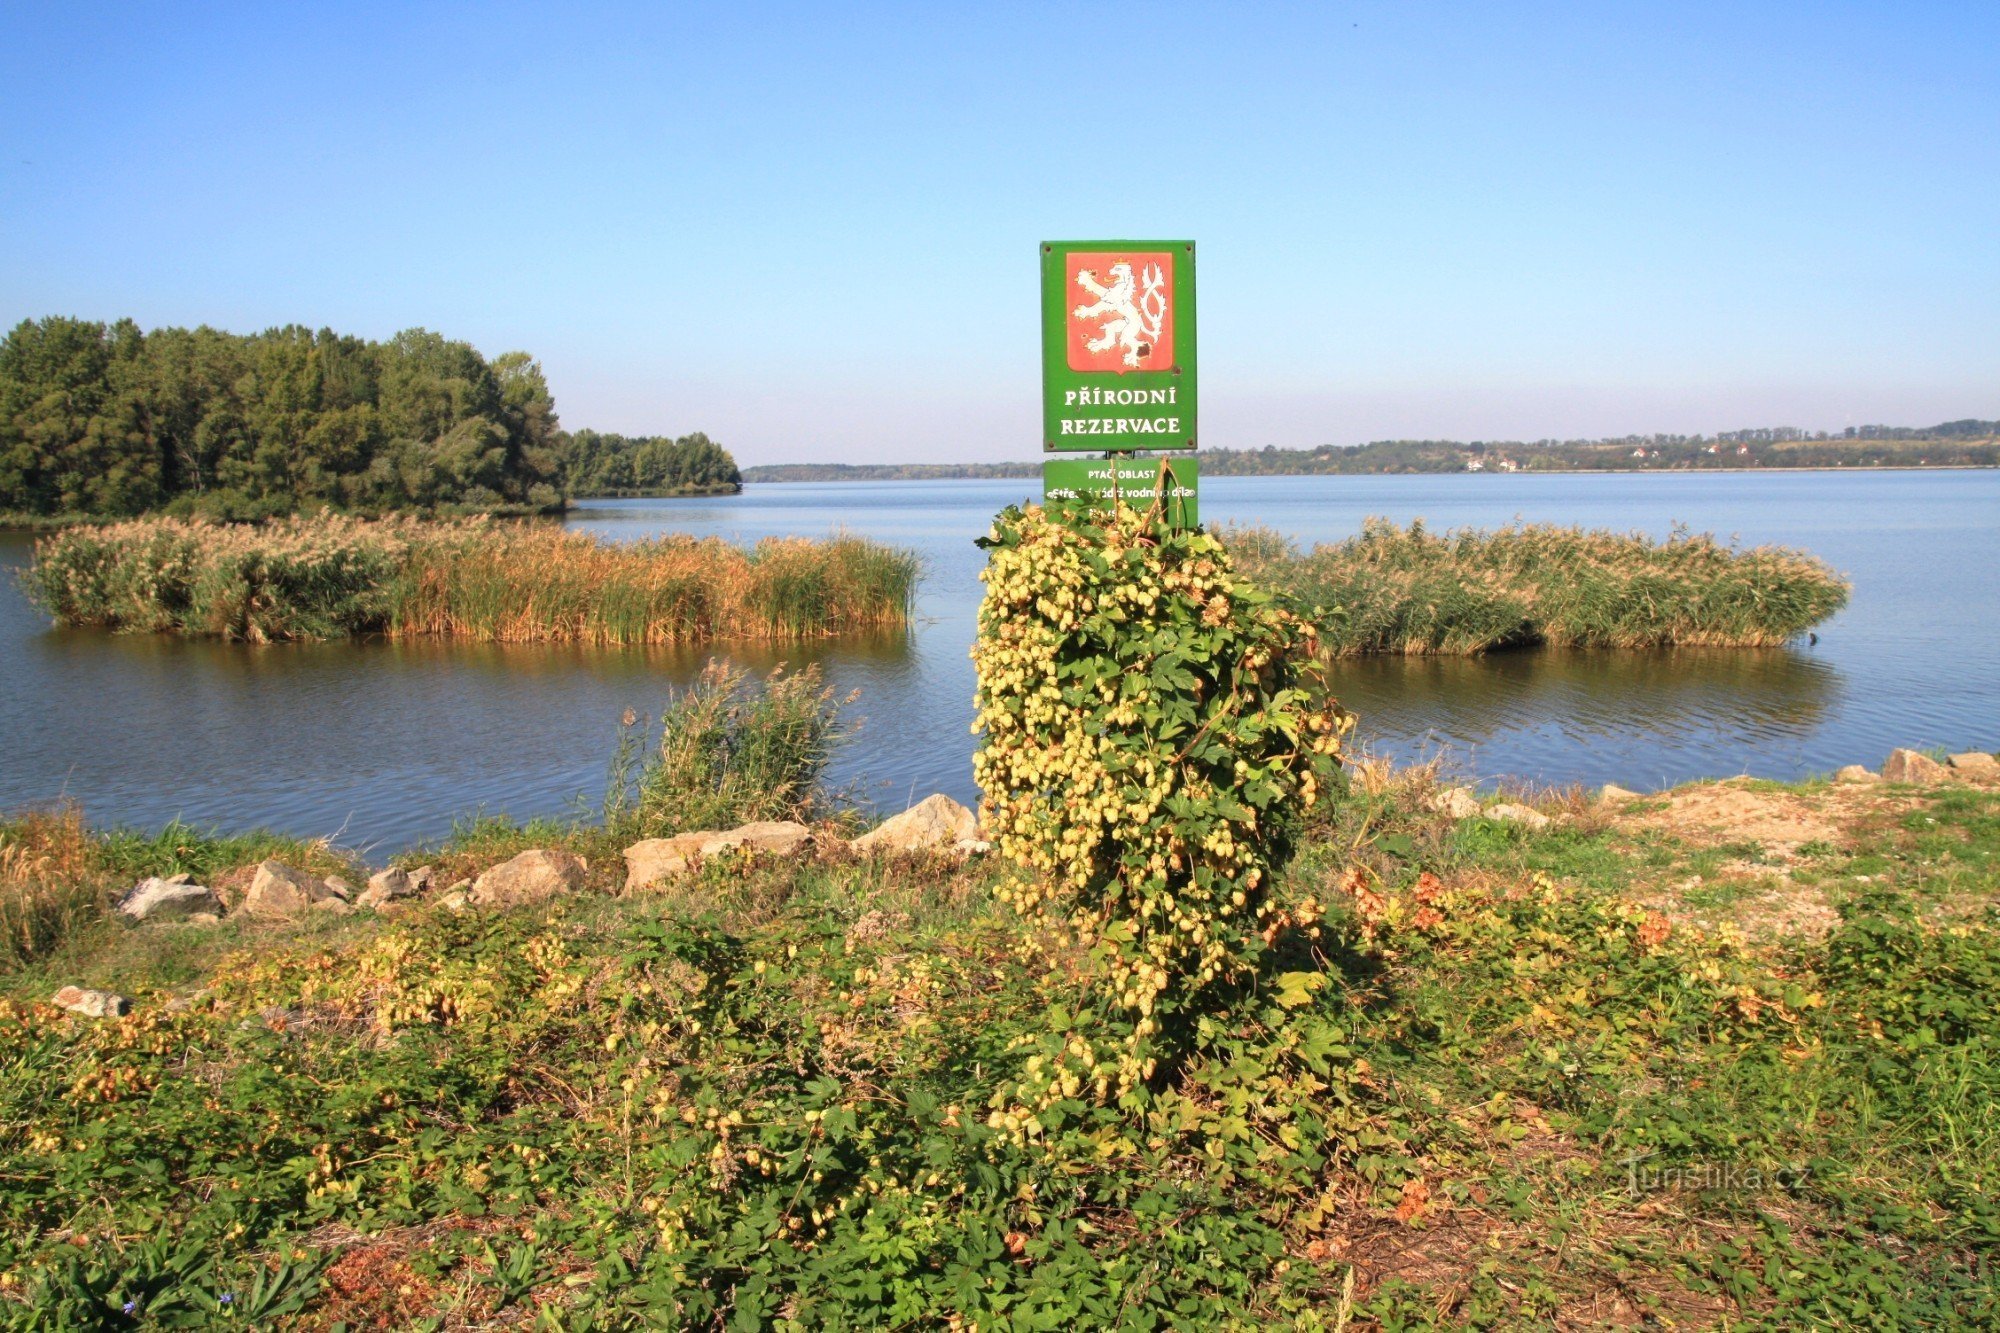 Věstonická reservoir - nature reserve